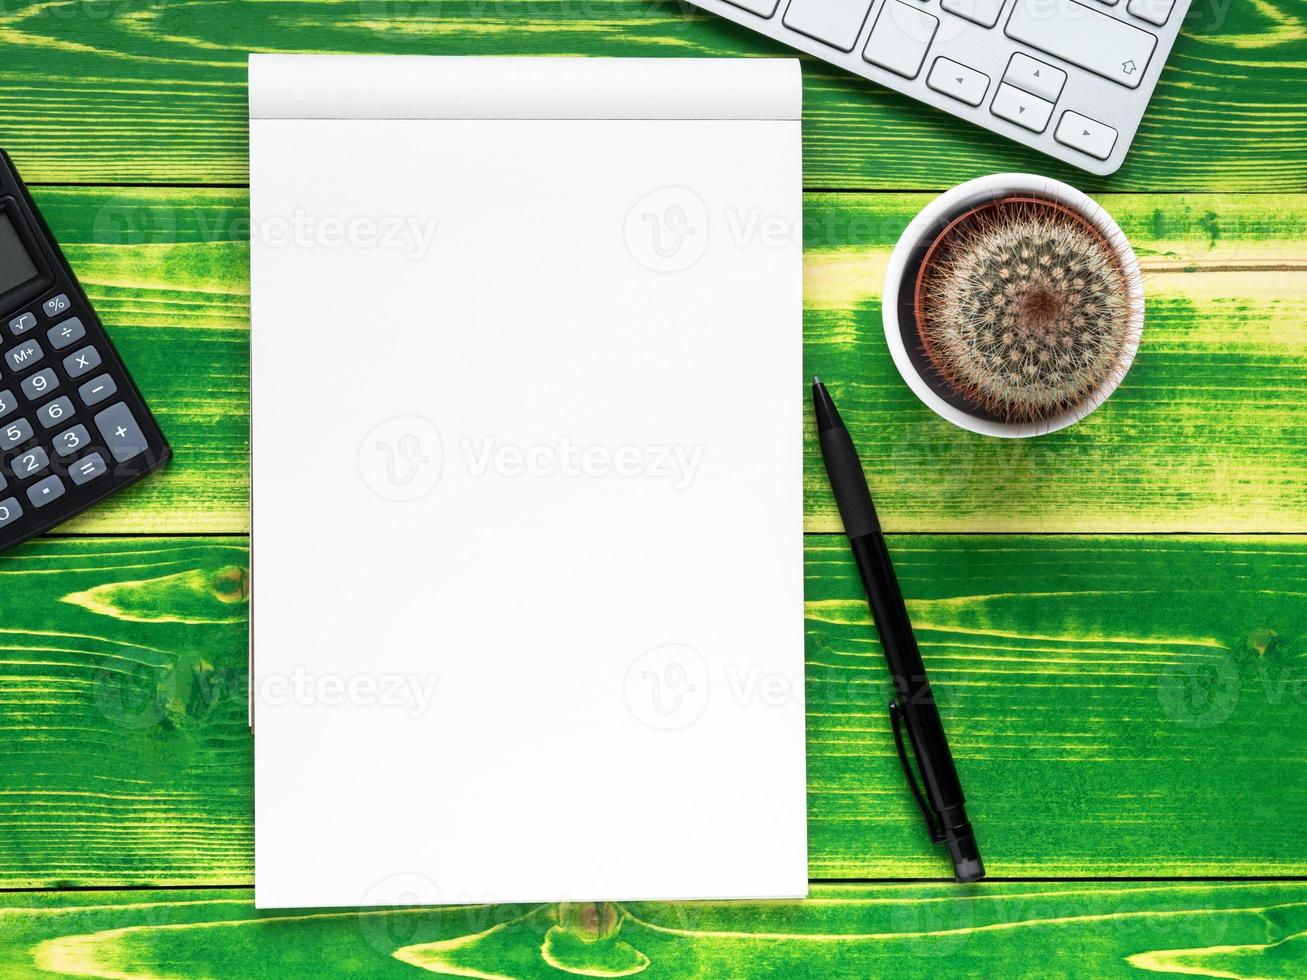 cuaderno abierto con página en blanco, bolígrafo, calculadora, teclado de computadora, cactus foto